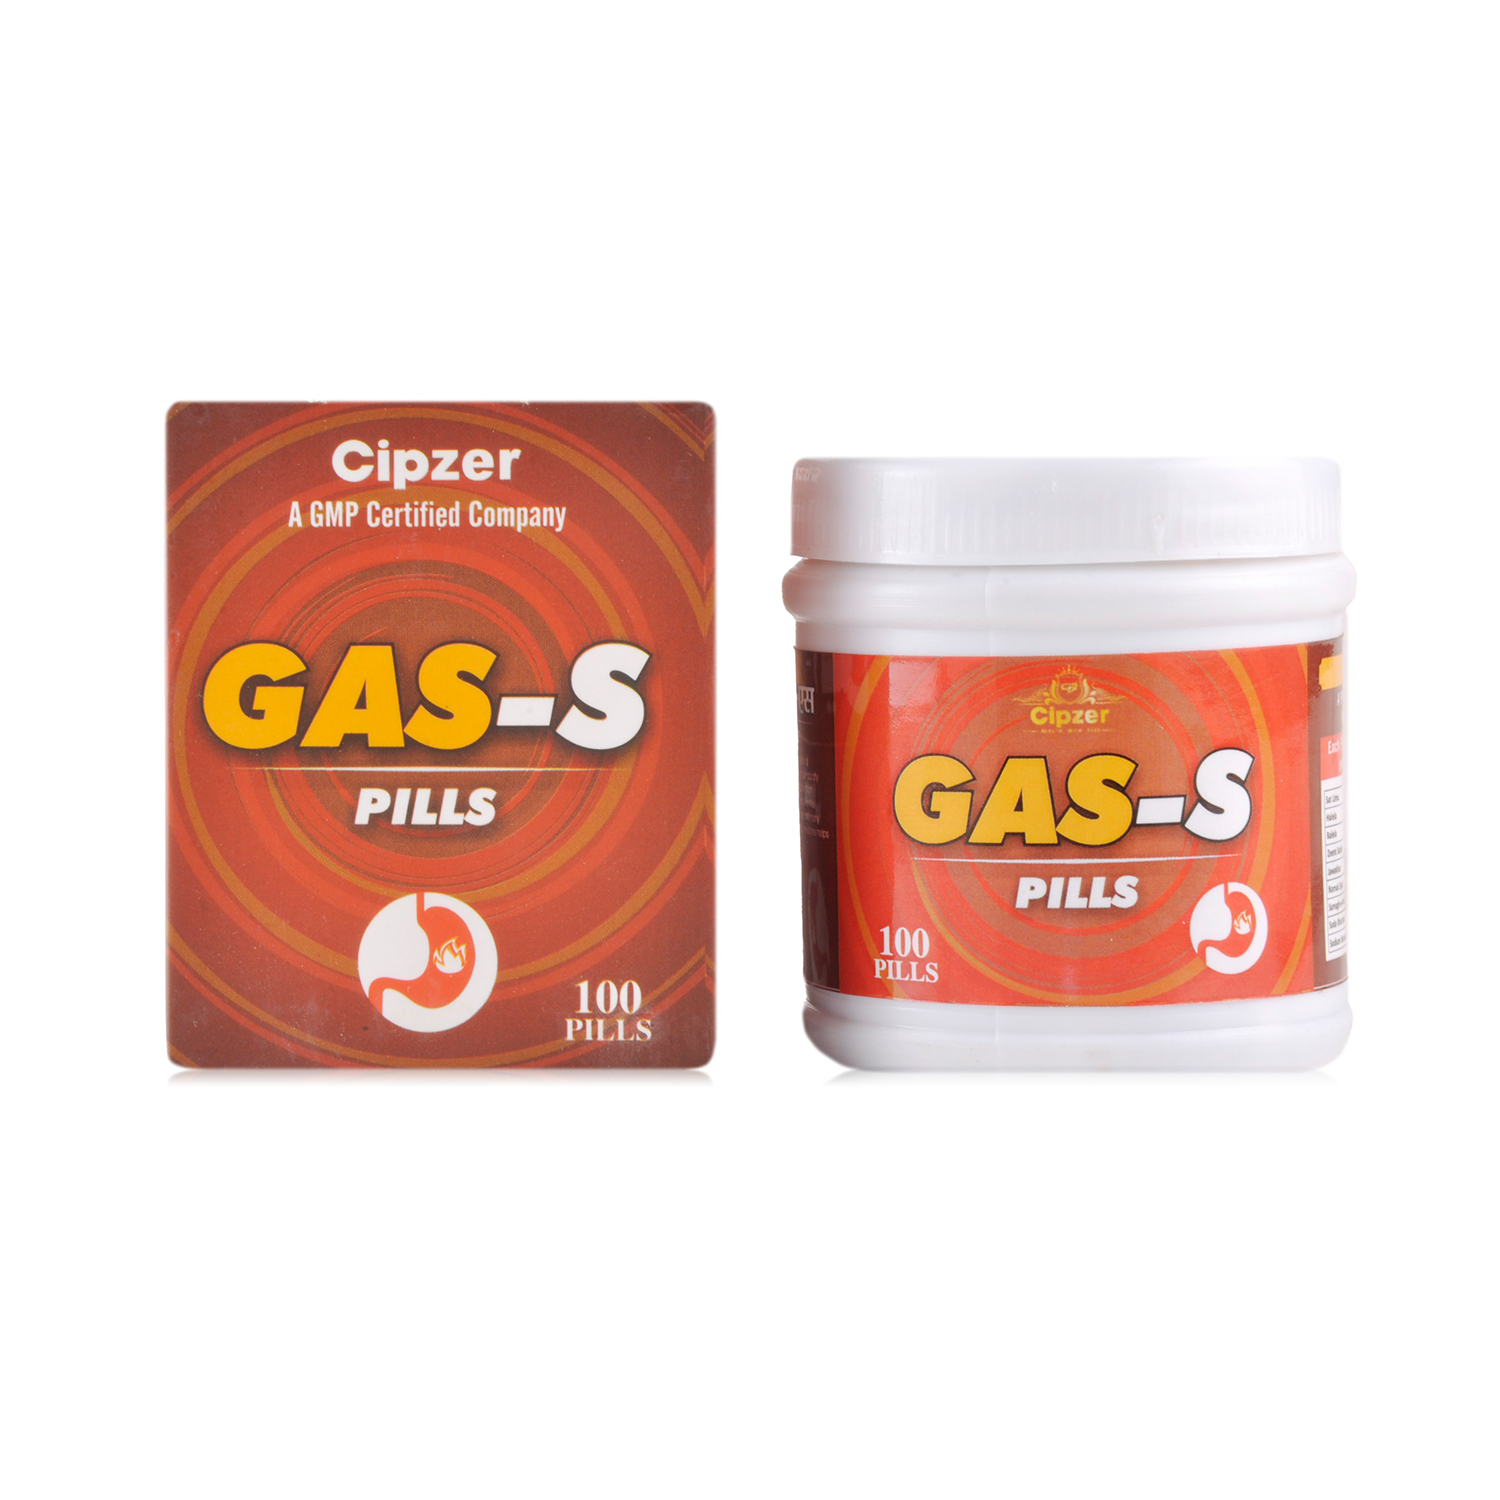 Cipzer Gas –S Pills